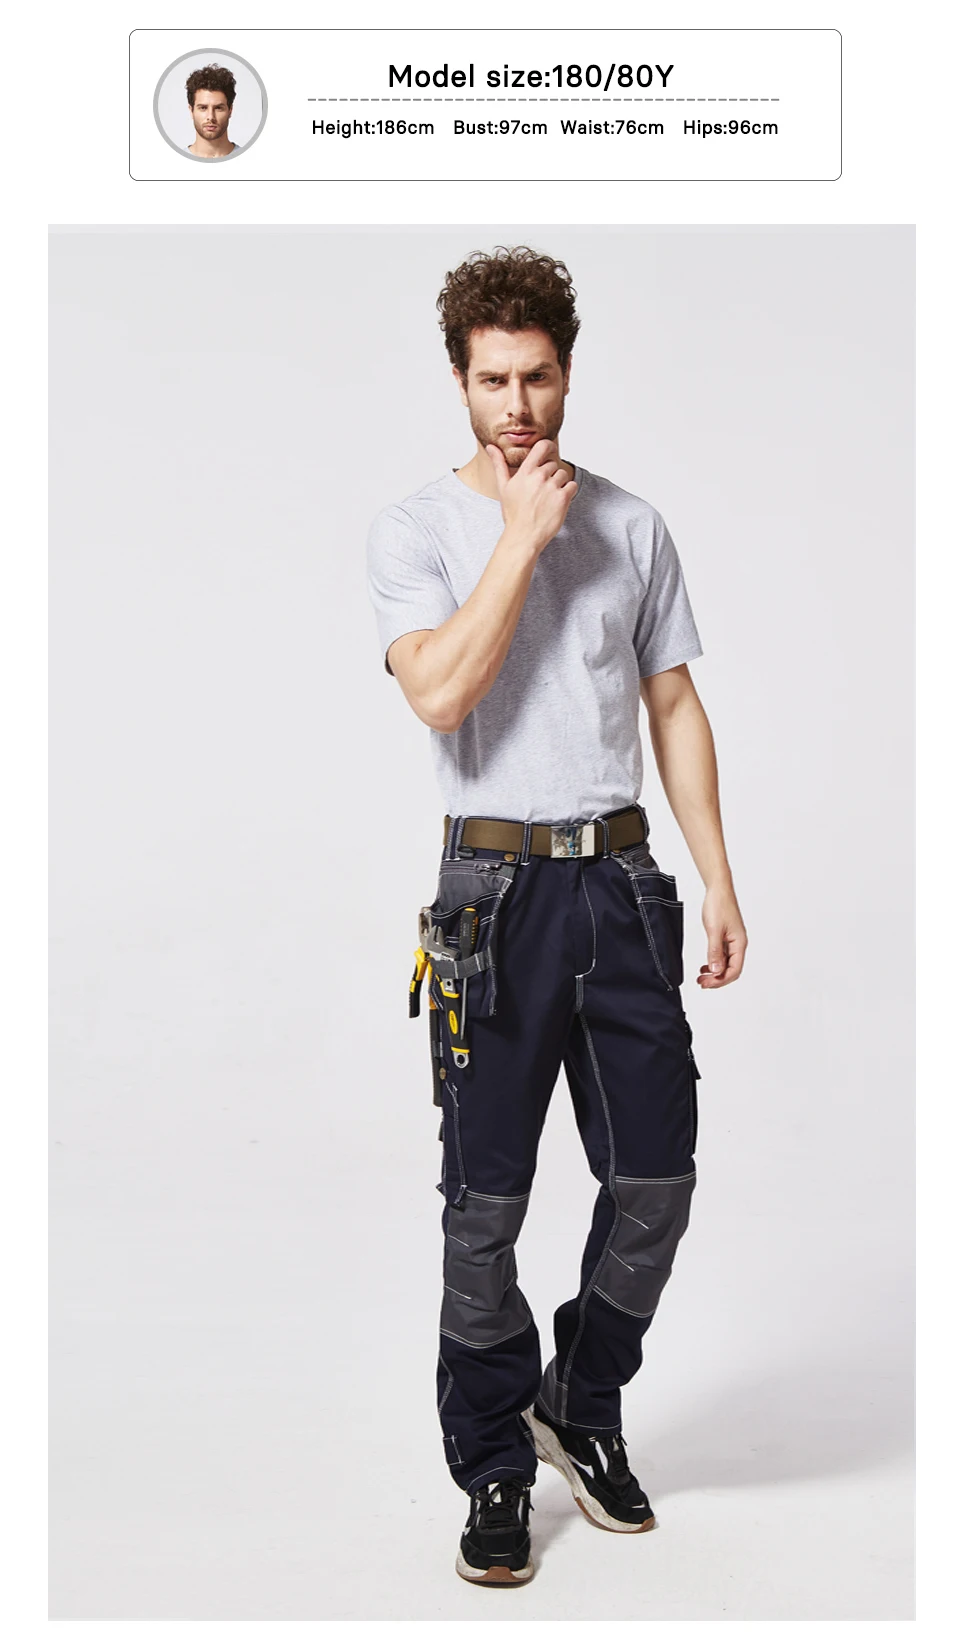 Высокое качество Черный Мульти-карманы инструмент рабочие брюки Мужская Рабочая одежда